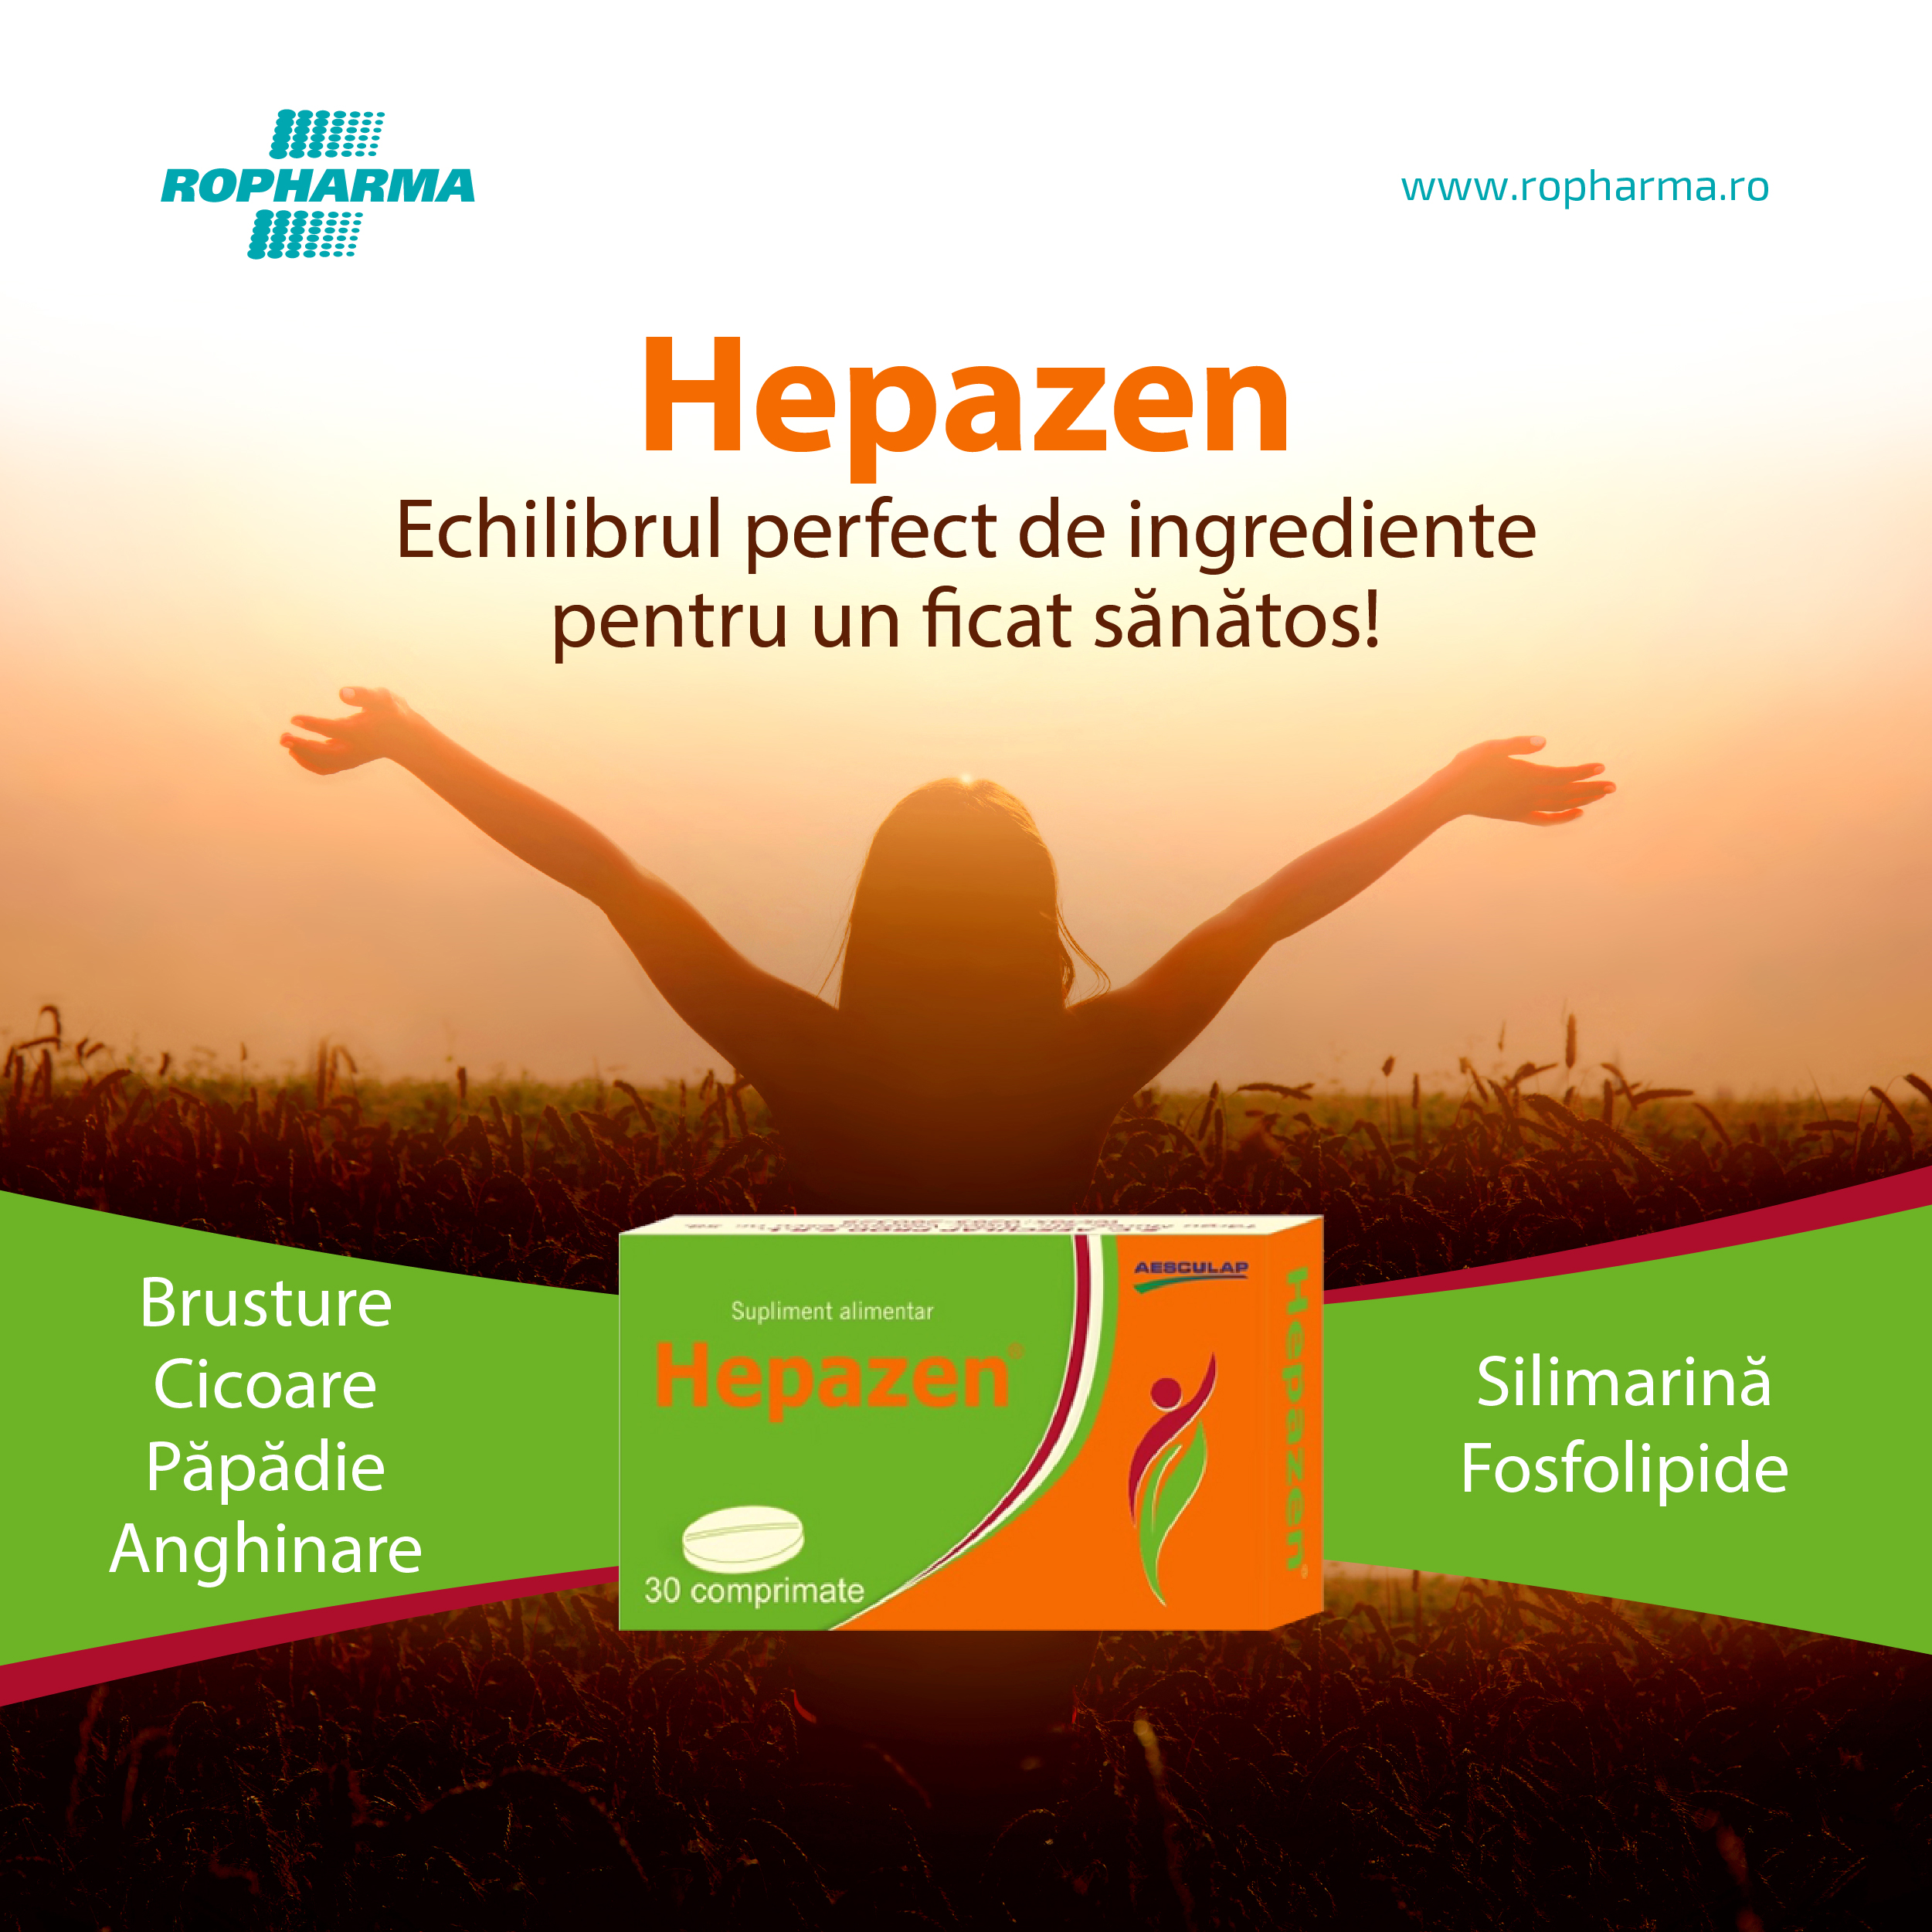 Hepazen – Echilibrul perfect de ingrediente pentru un ficat sănătos!